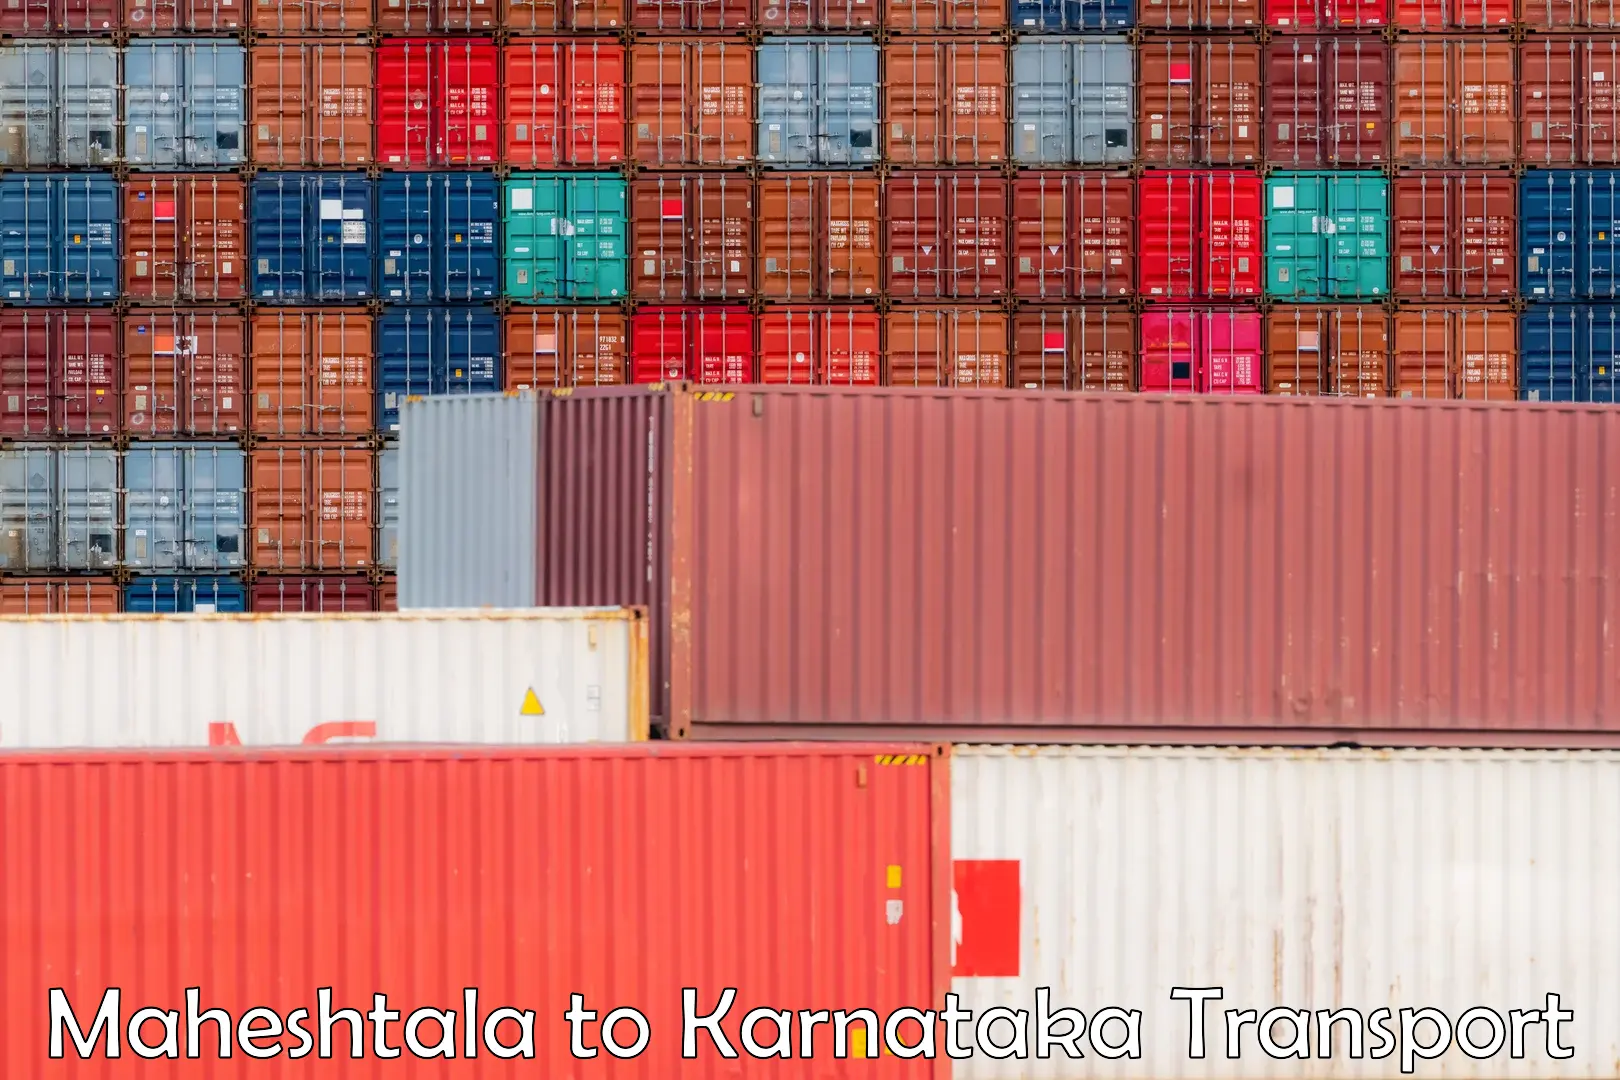 Container transport service Maheshtala to Gundlupete